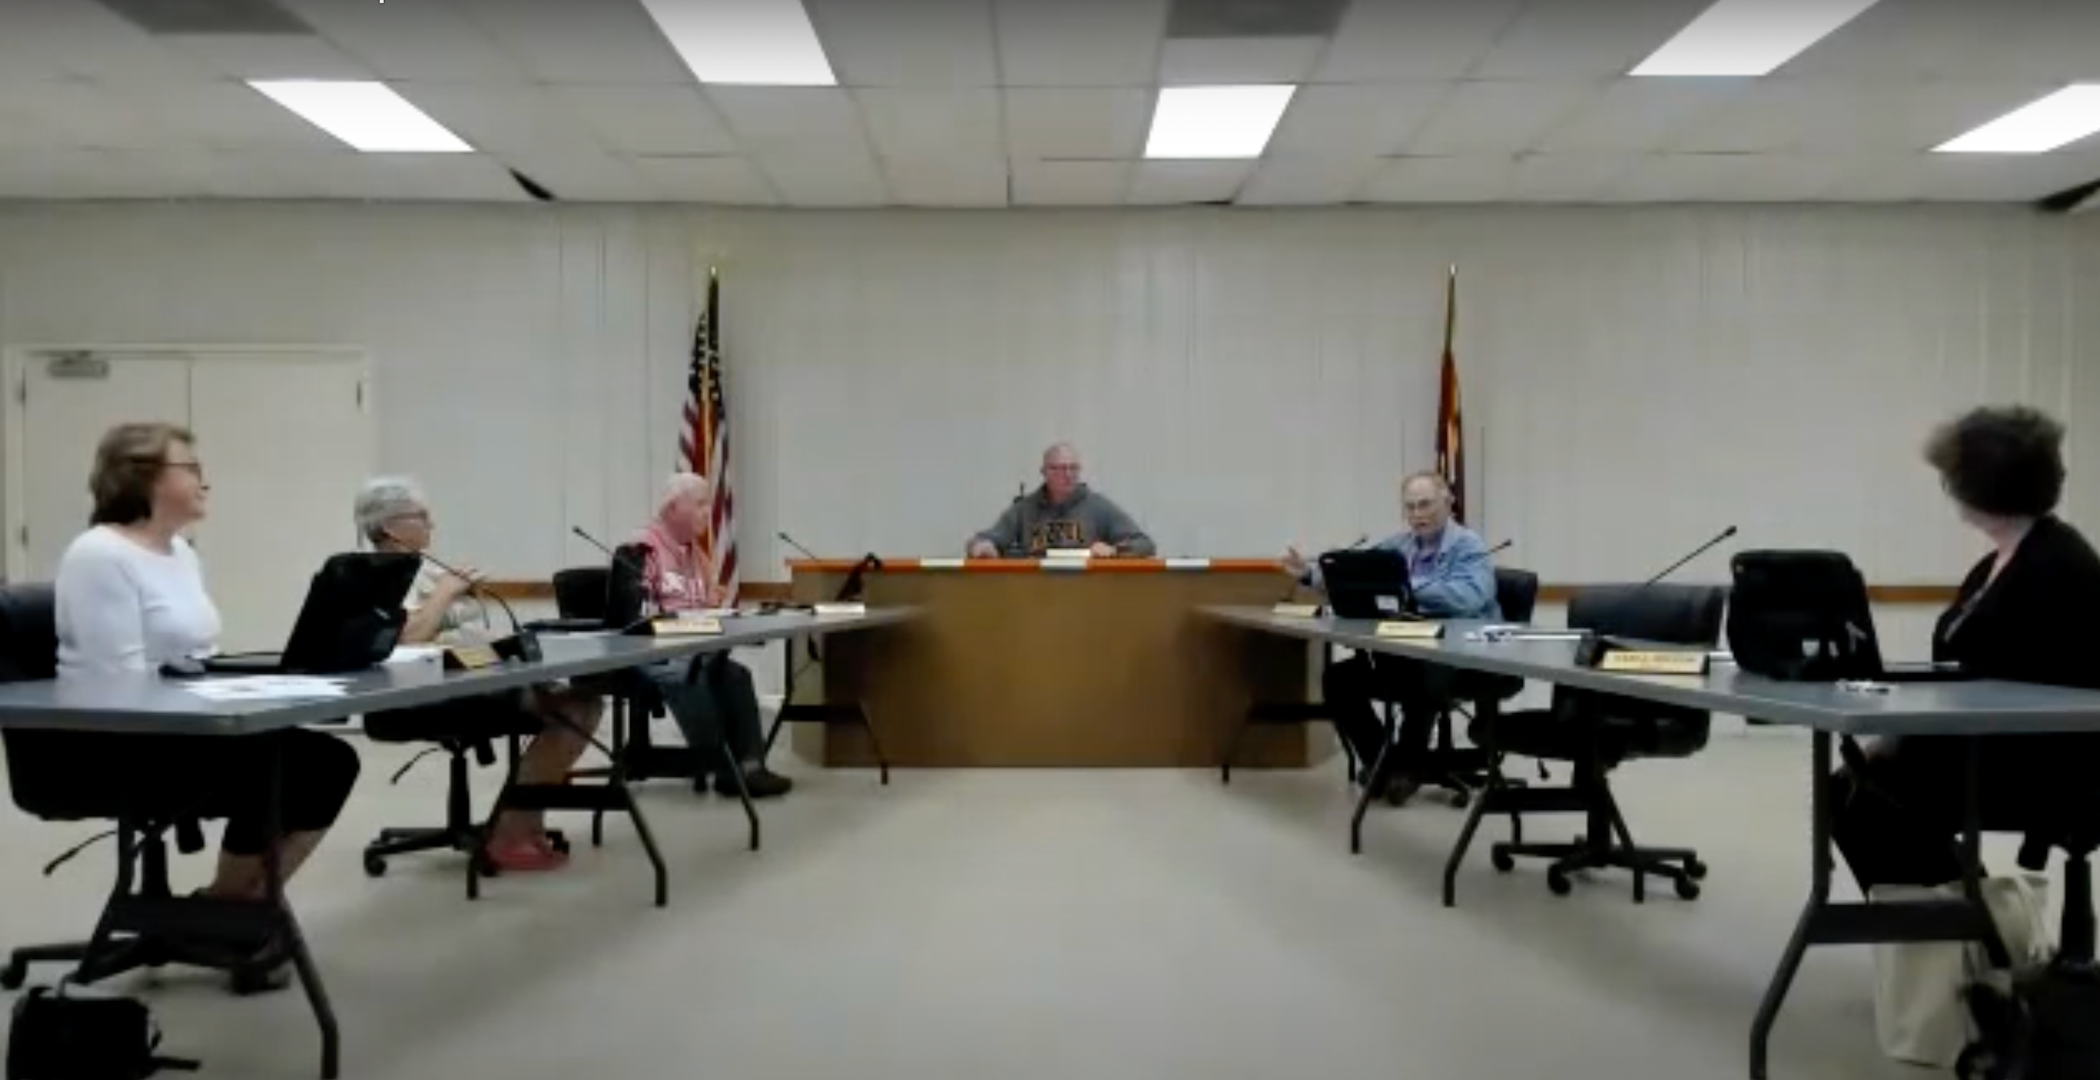 A town board of aldermen meeting